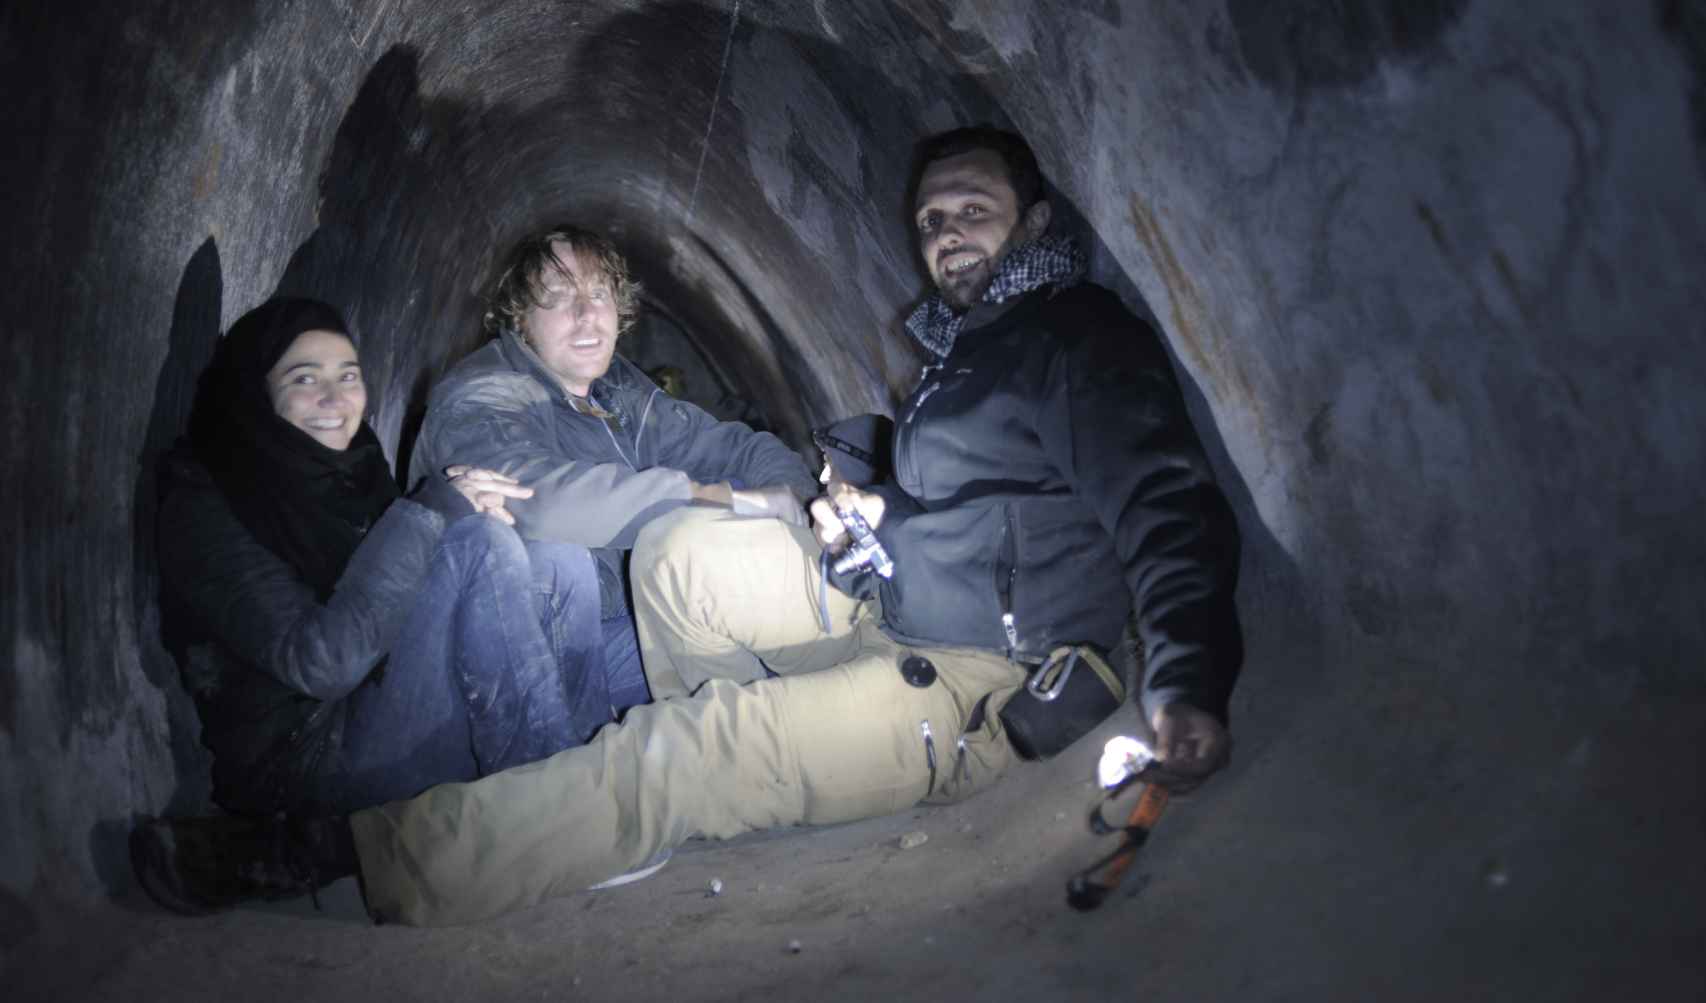 La periodista junto a Alessio Romenzi y Roberto Fraile en un túnel de entrada a la ciudad siria de Homs.